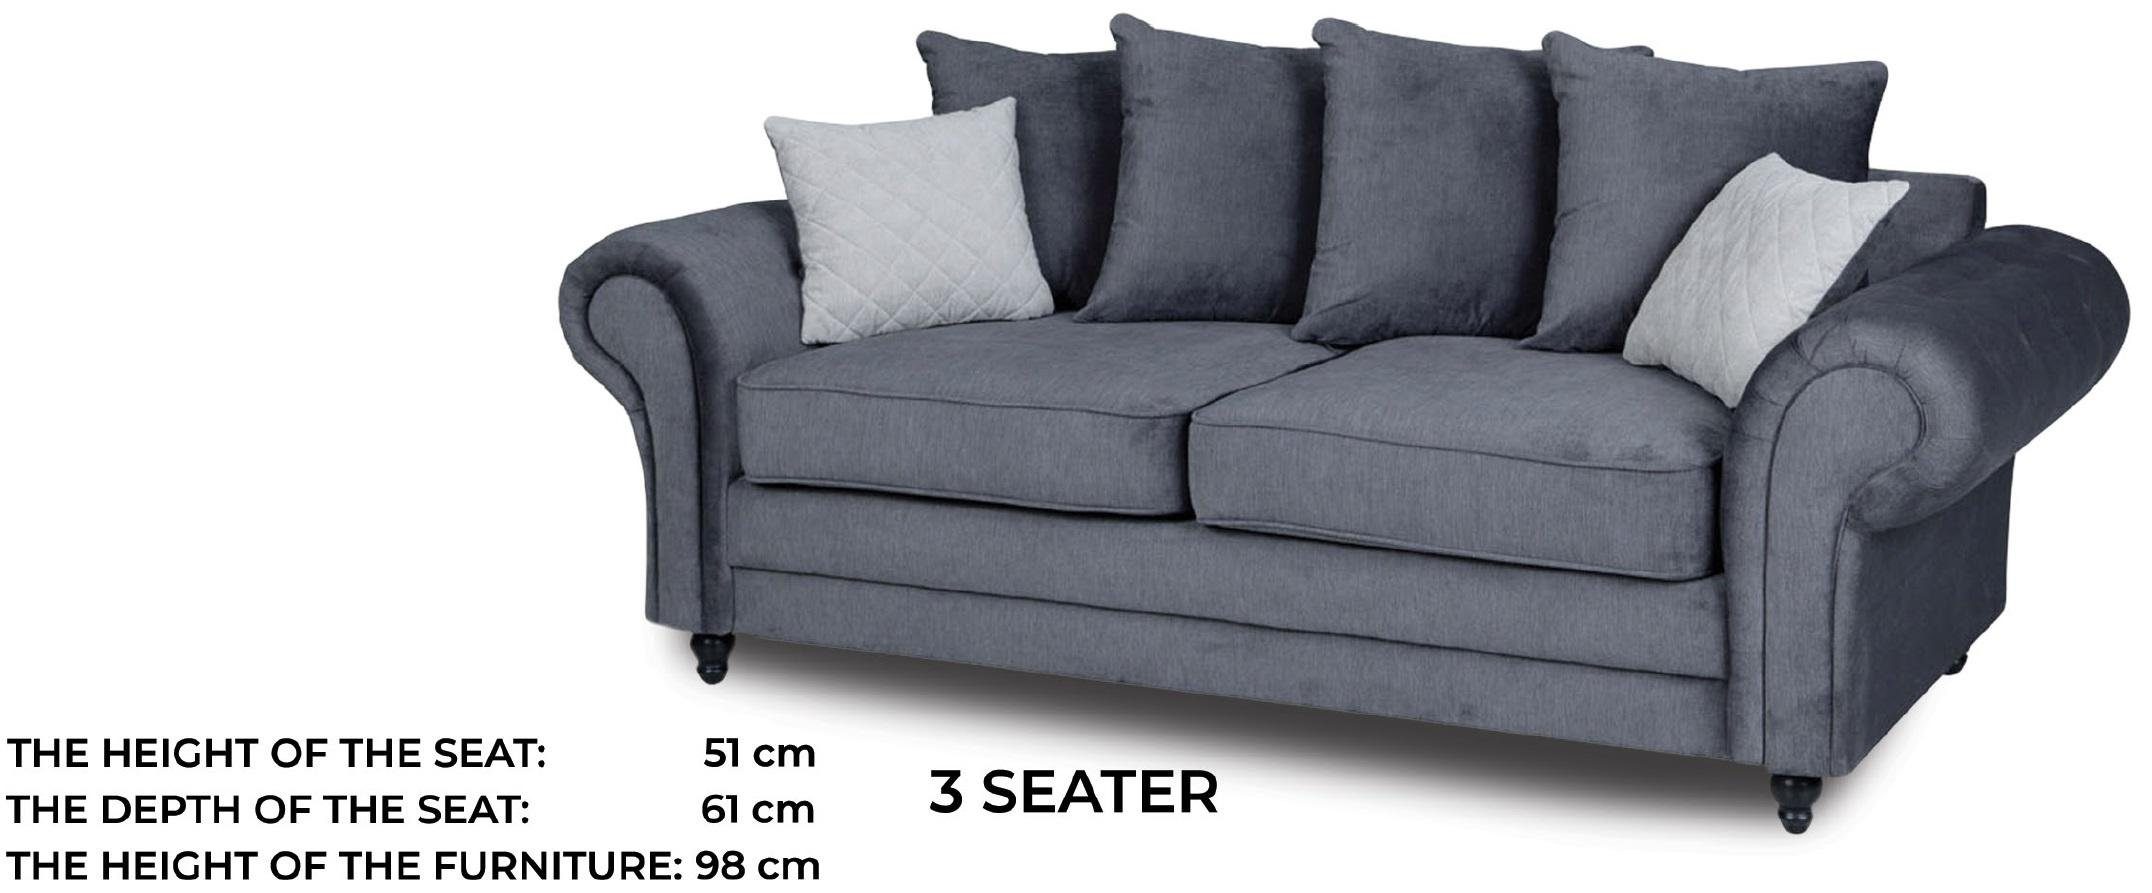 JVmoebel Sofa Luxus Neu, moderne Stilvoll Europe in Dreisitzer Made Grauer Couch Polster